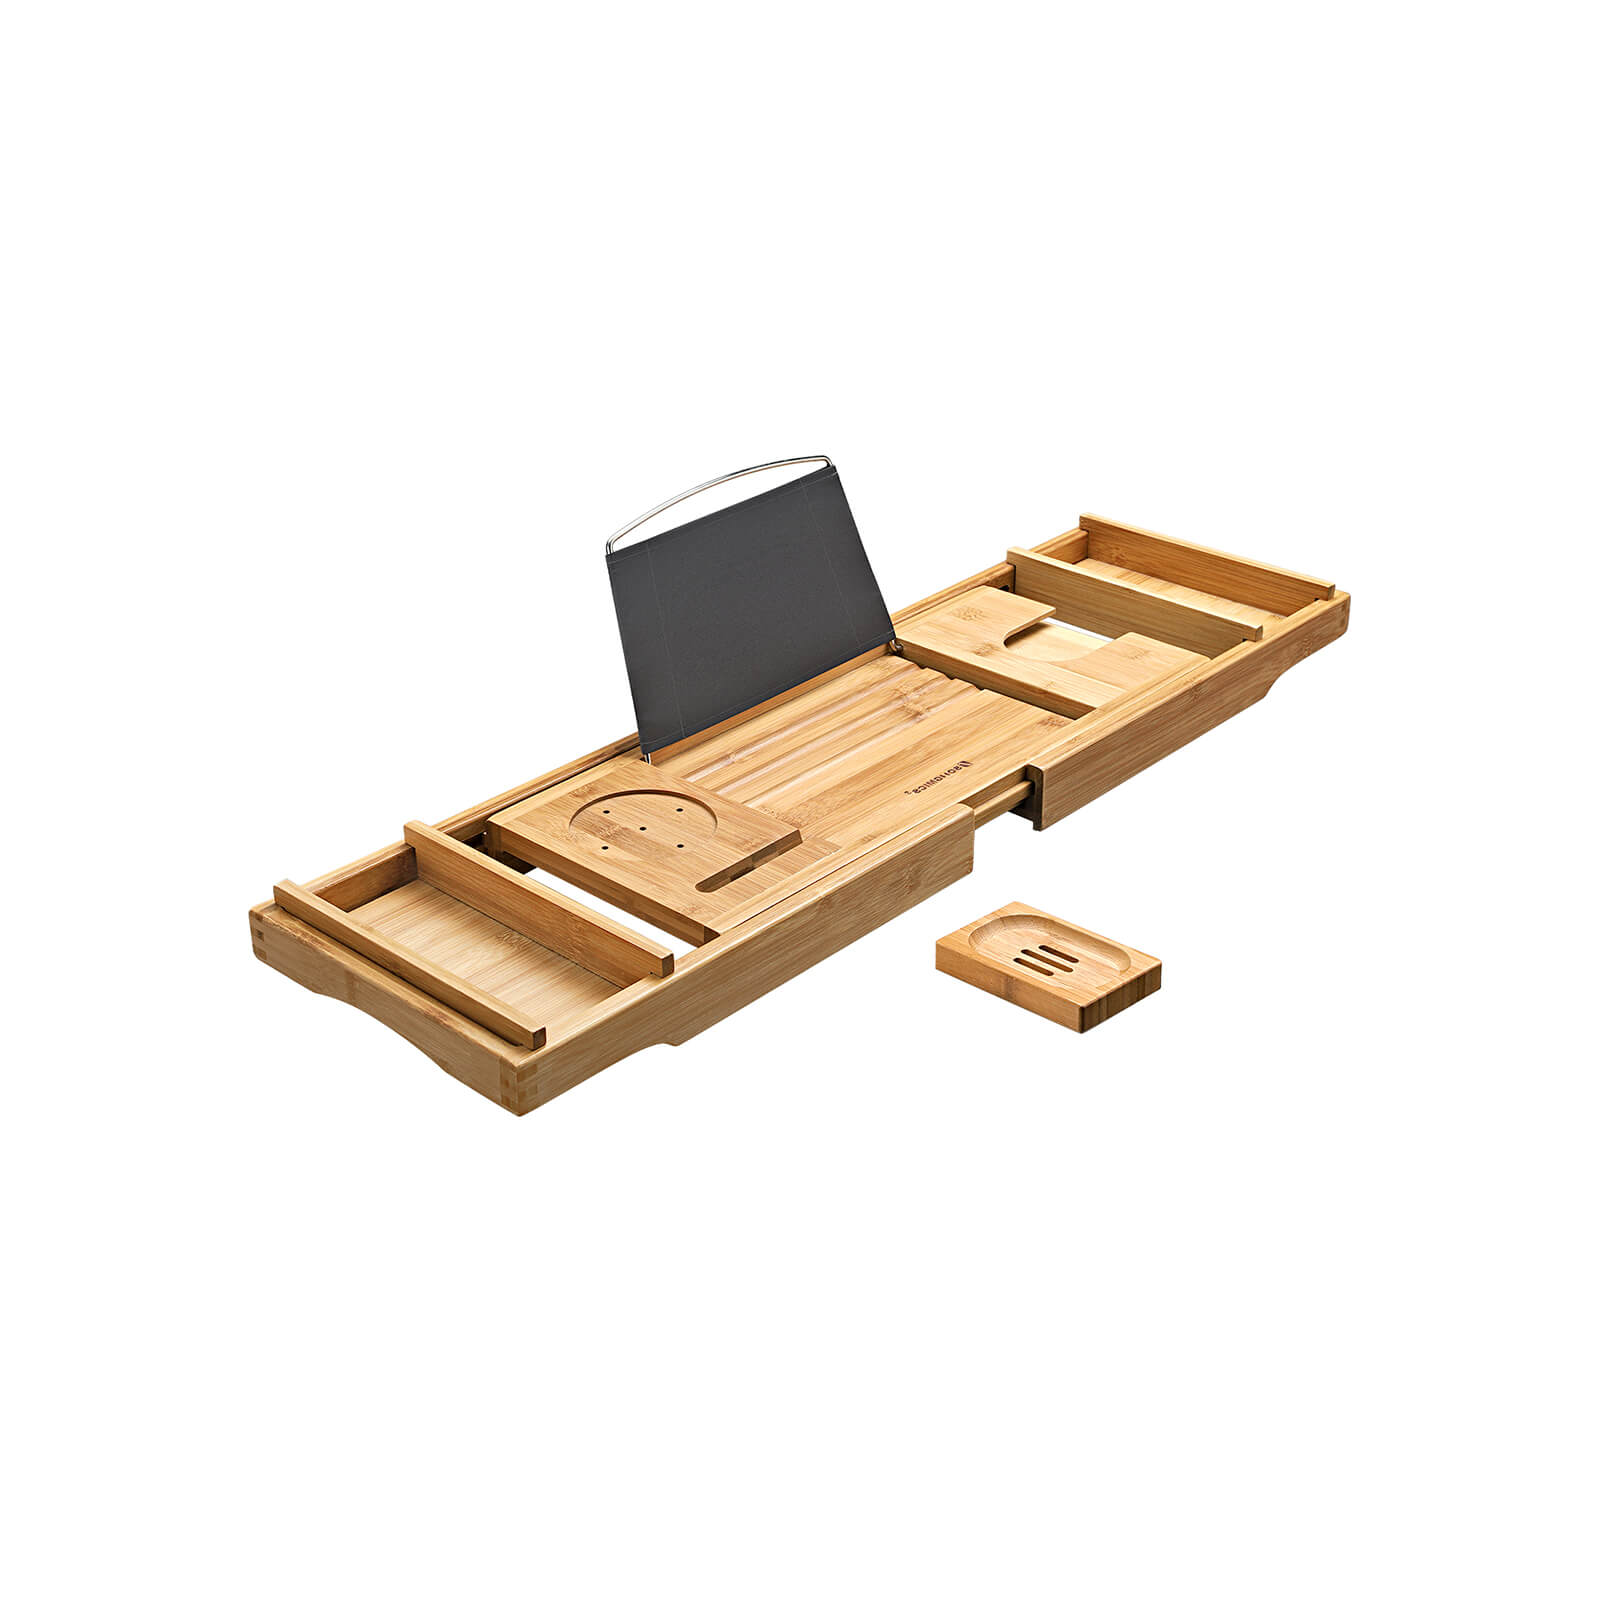 Badplank voor in bad – Bedtafel – Bamboe – 75-109 x 4.5 x 23 cm – Naturel